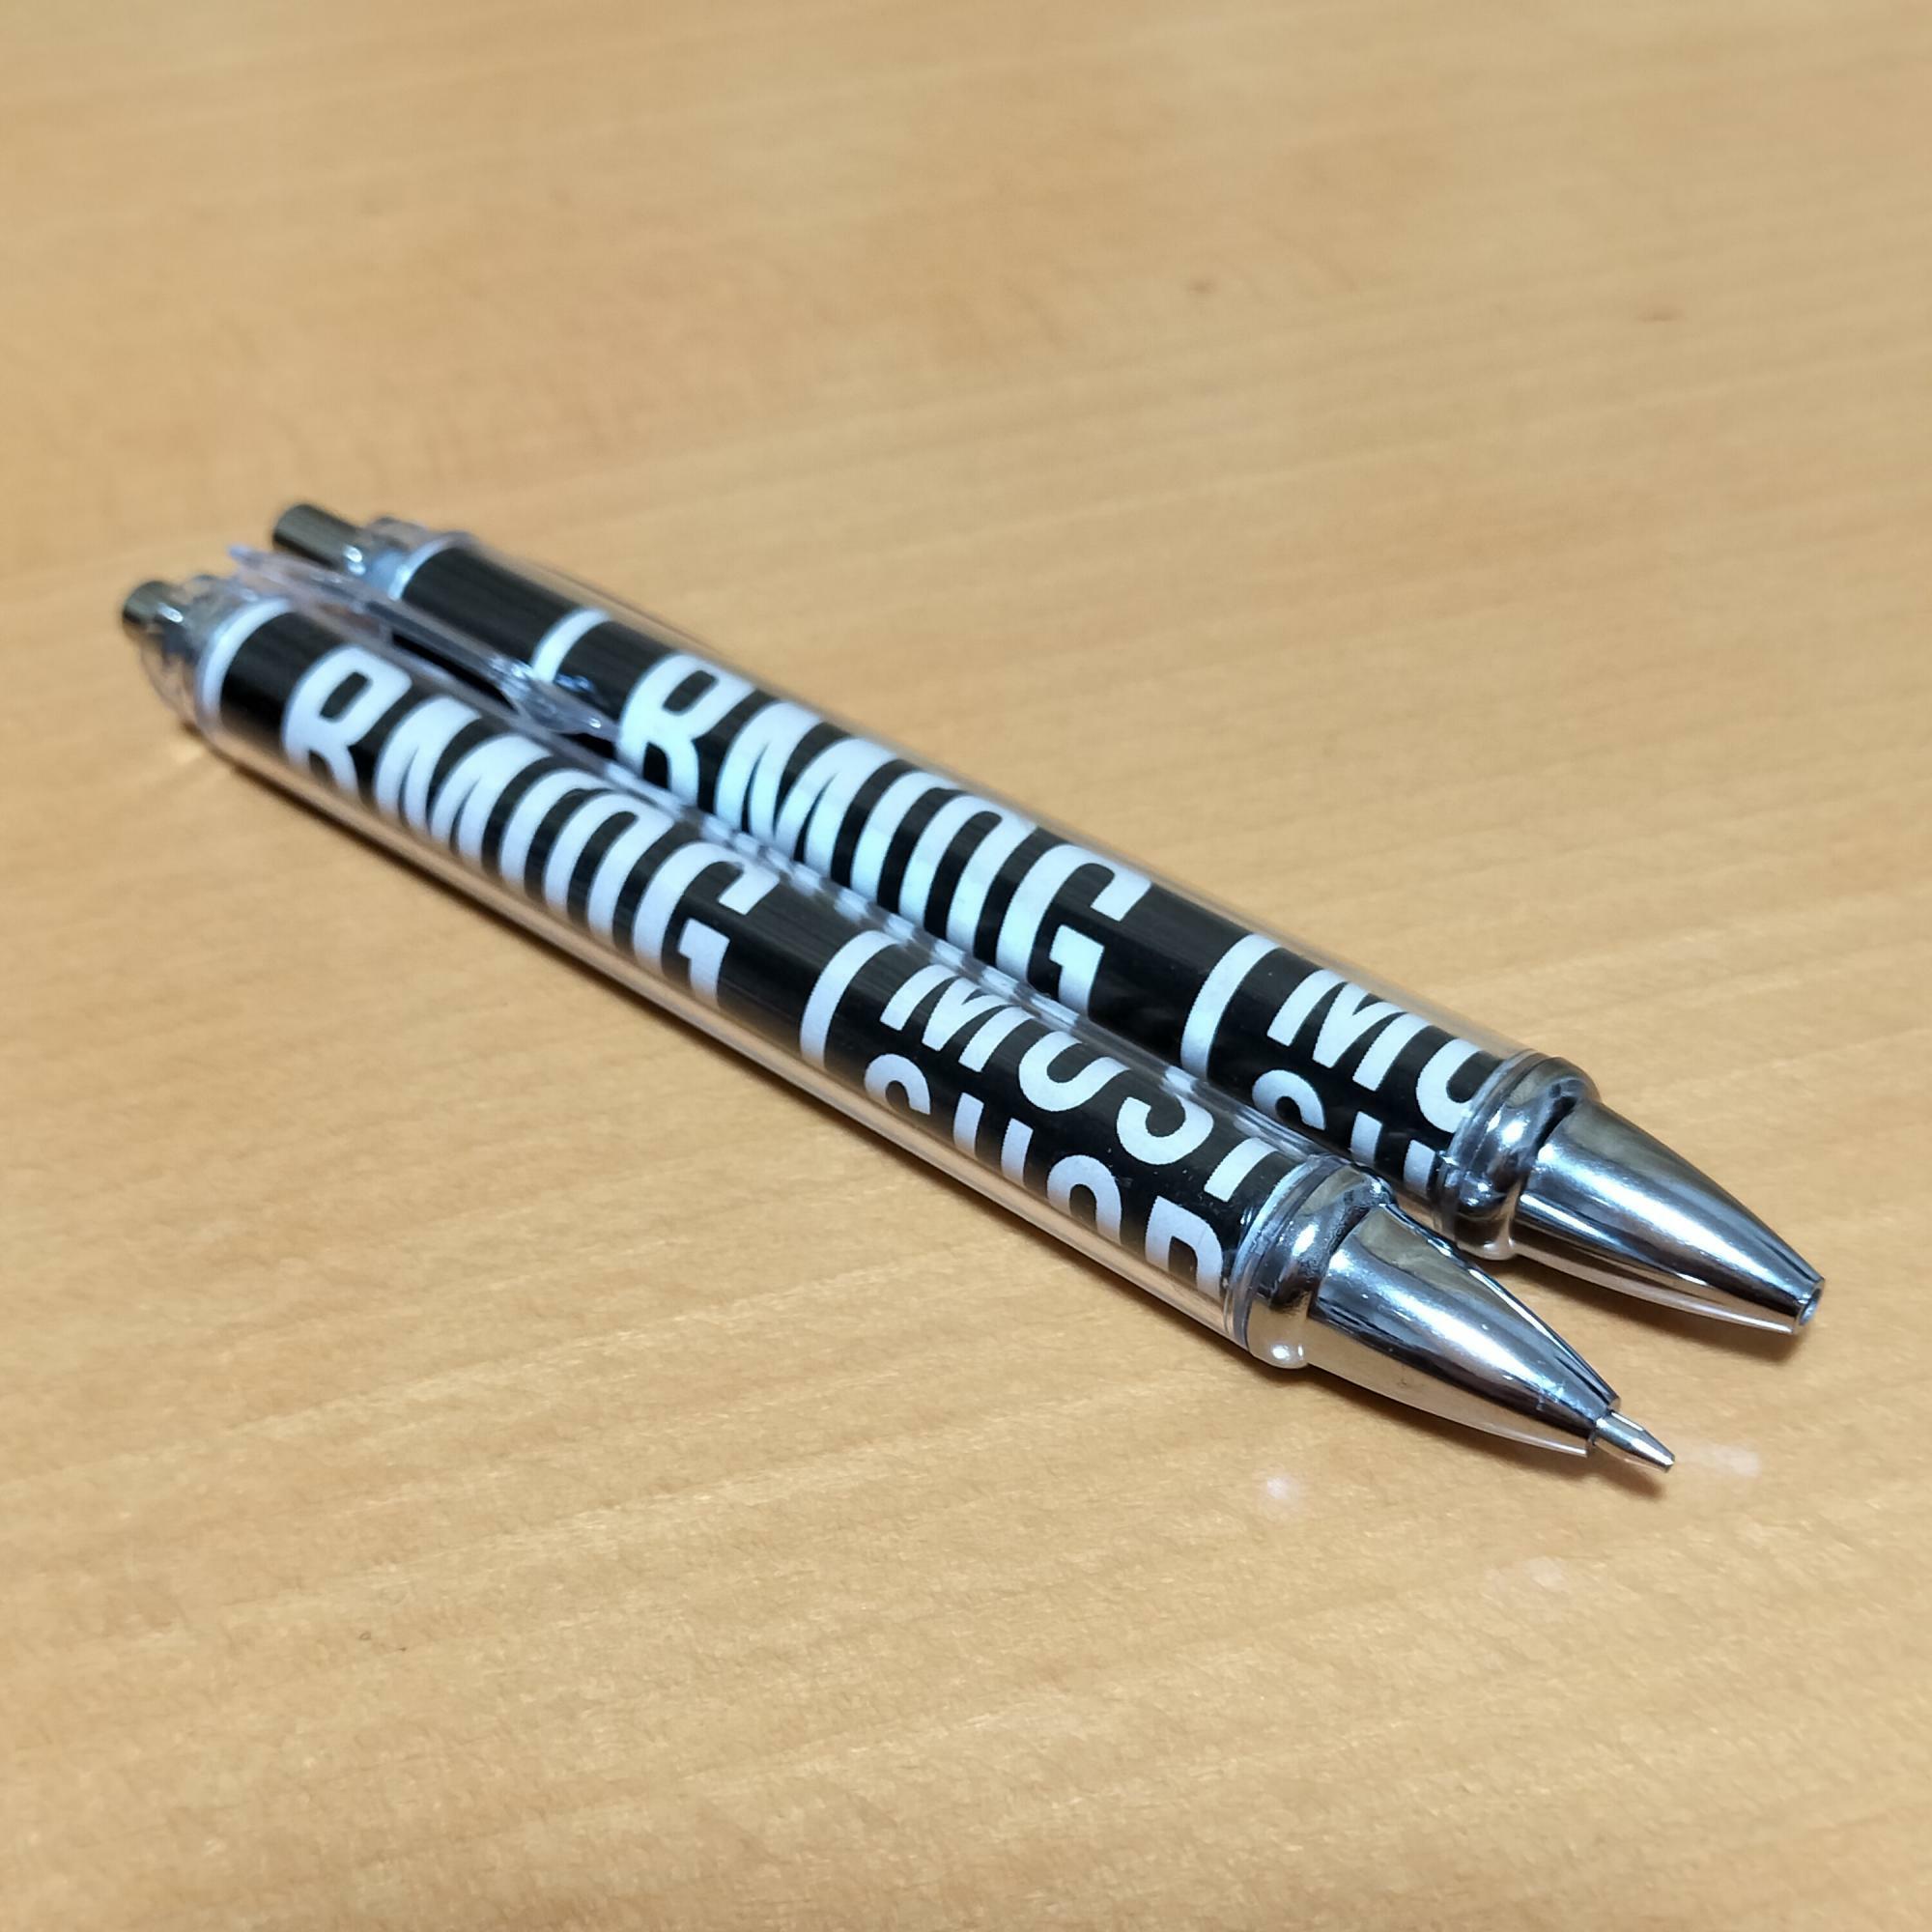 ペン軸からボールペンやシャープペンの部品を出す。ペン軸に台紙を巻いたら部品を全て元に戻す。台紙に説明が書いてあるので切らないよう注意。ペン軸に紙を巻き付けて留めたらペン先を押し込みながら締める